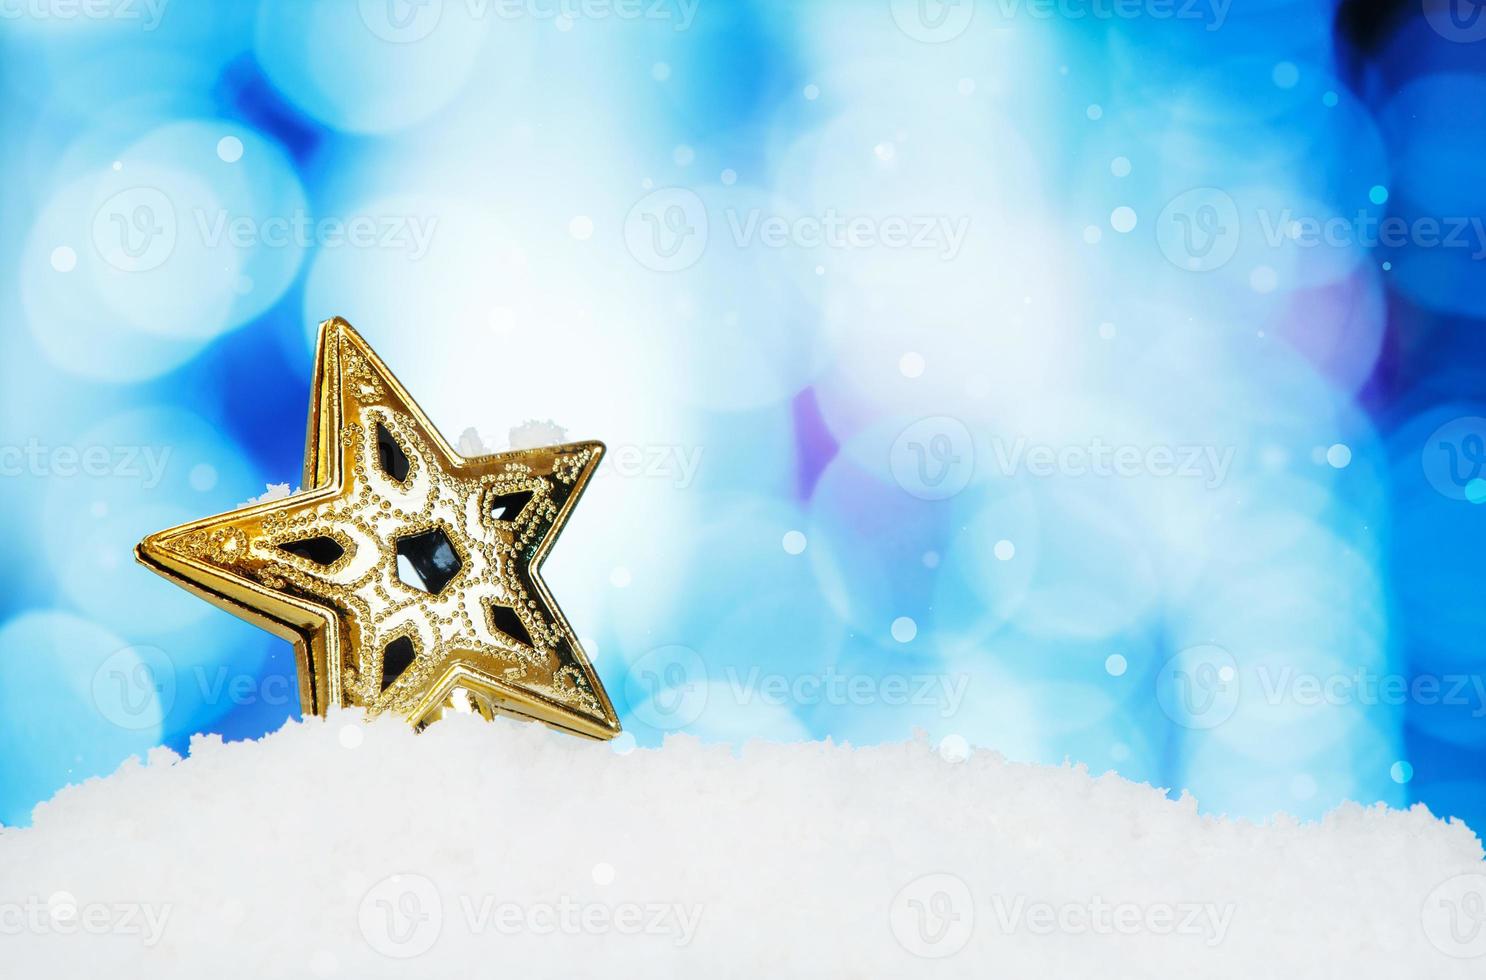 stjärna och jul dekoration på abstrakt bakgrund och snöflingor foto